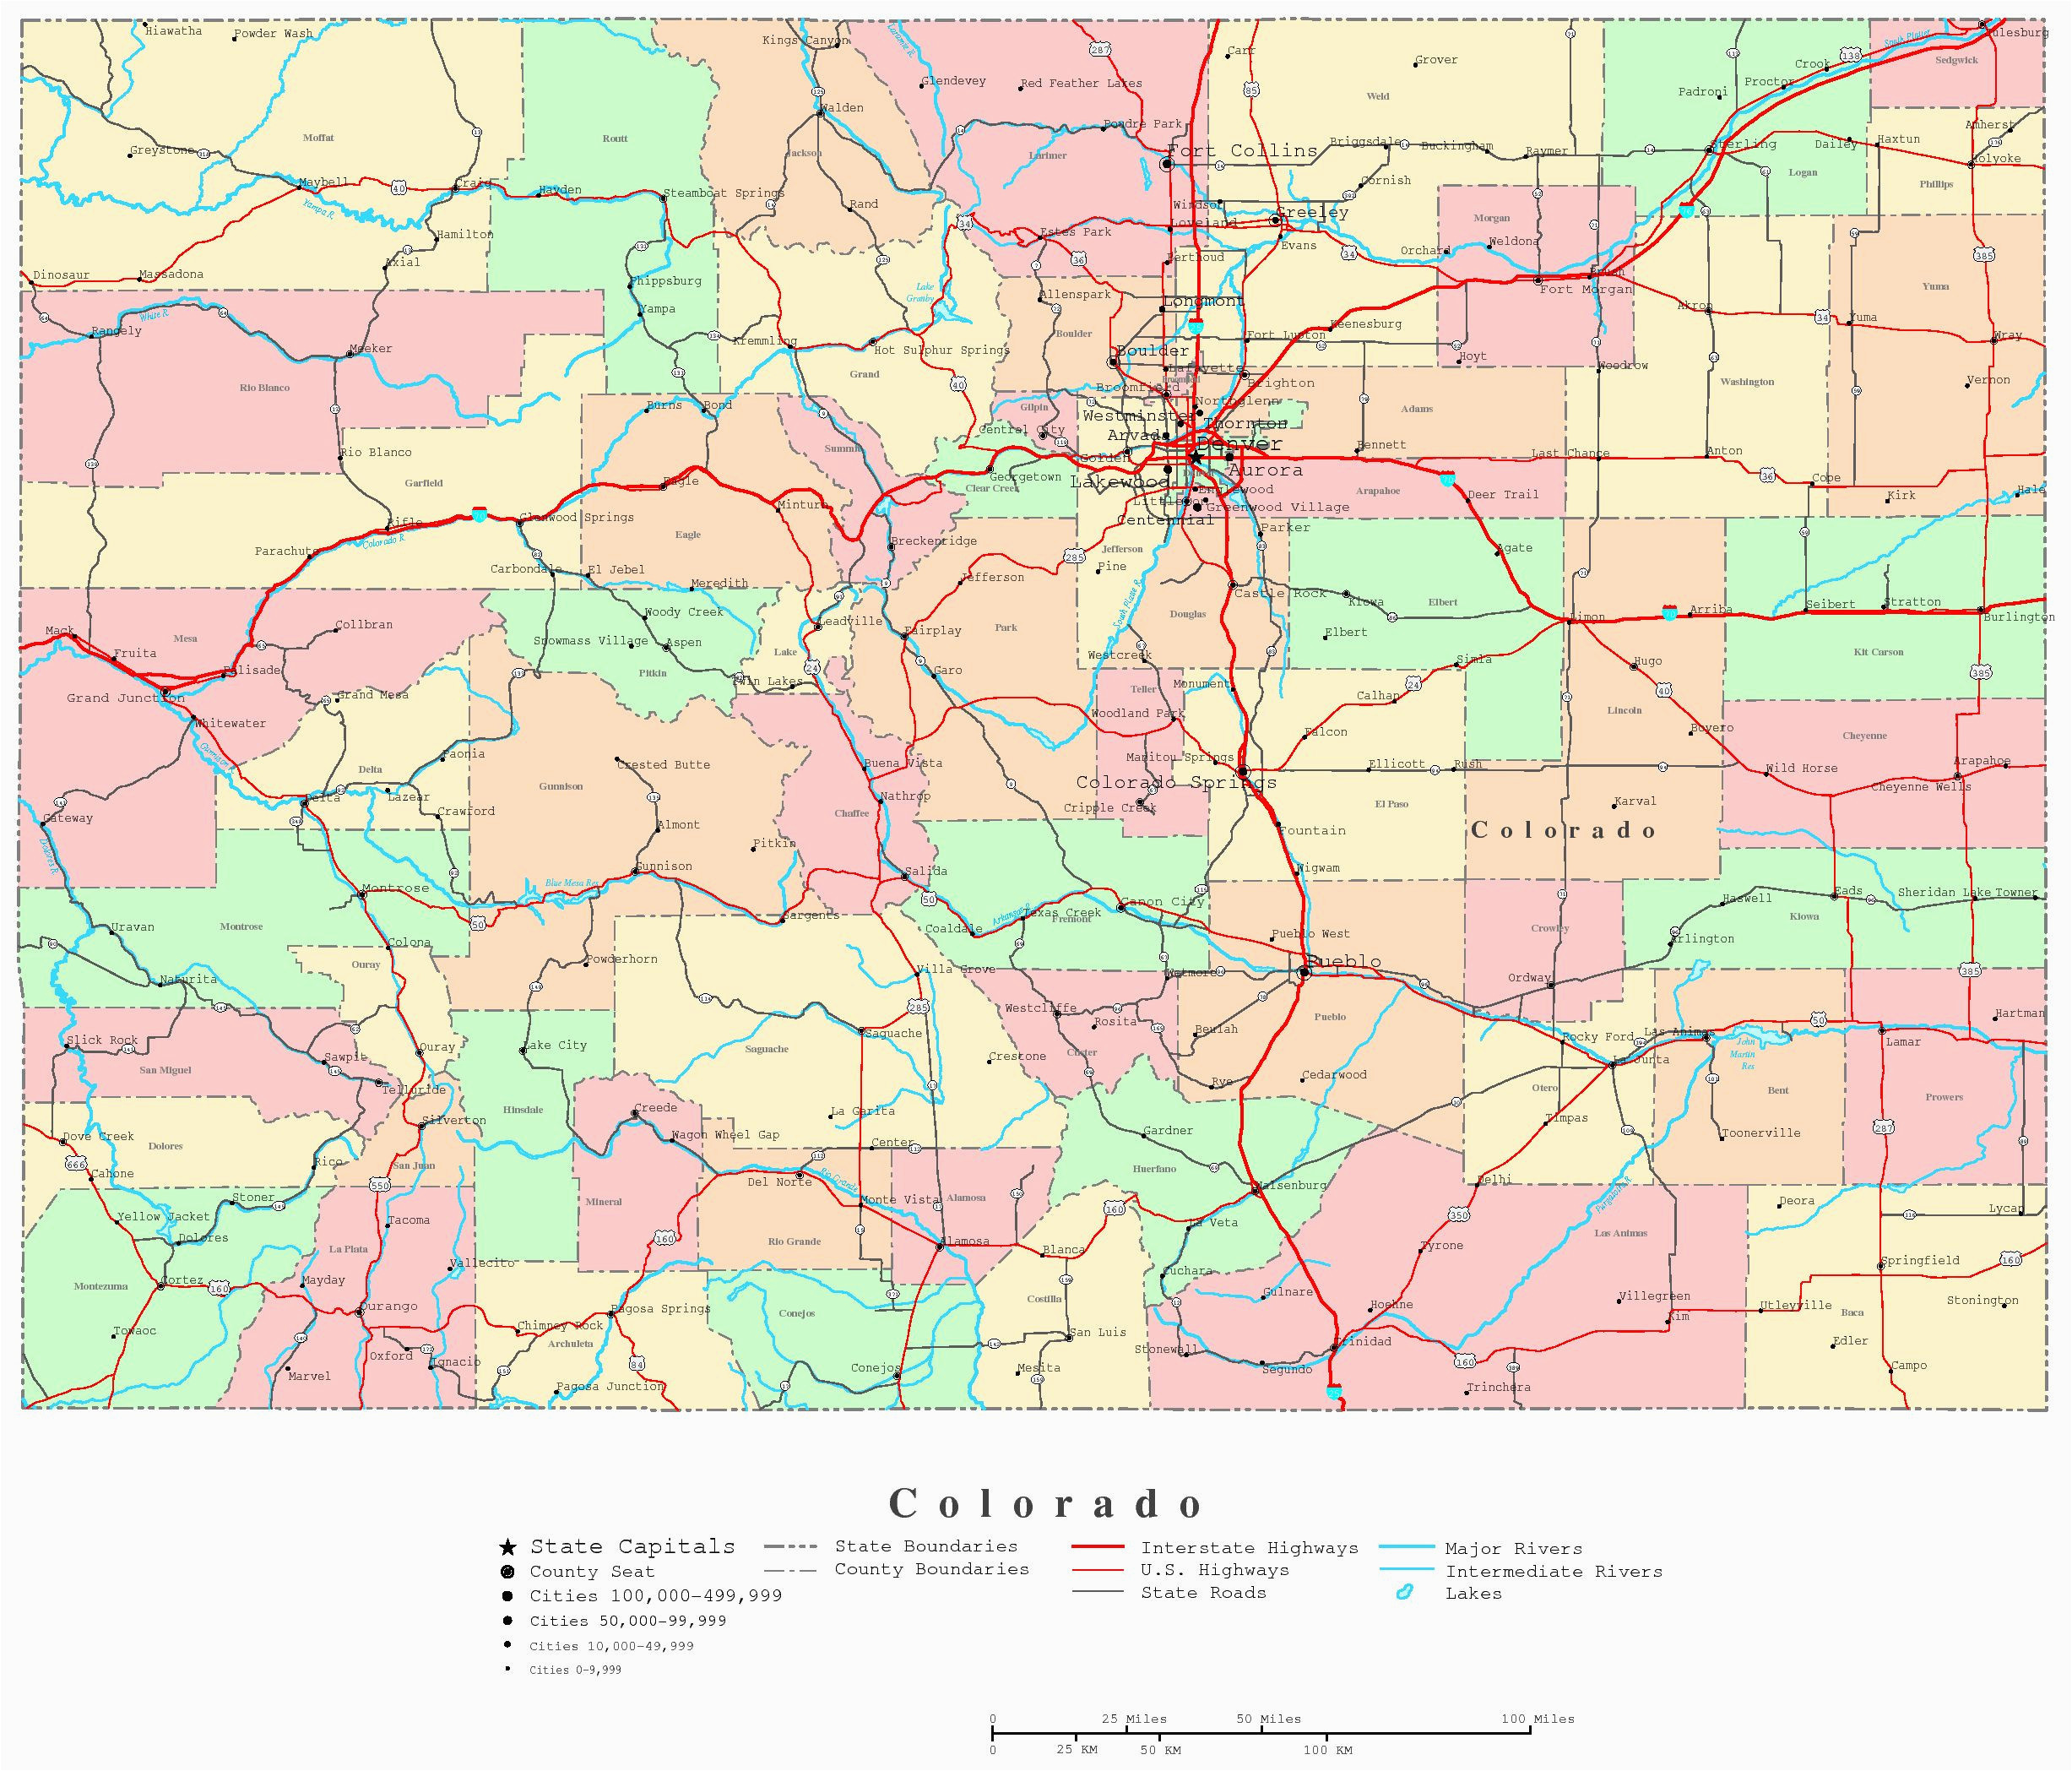 Colorado Road Map Printable secretmuseum